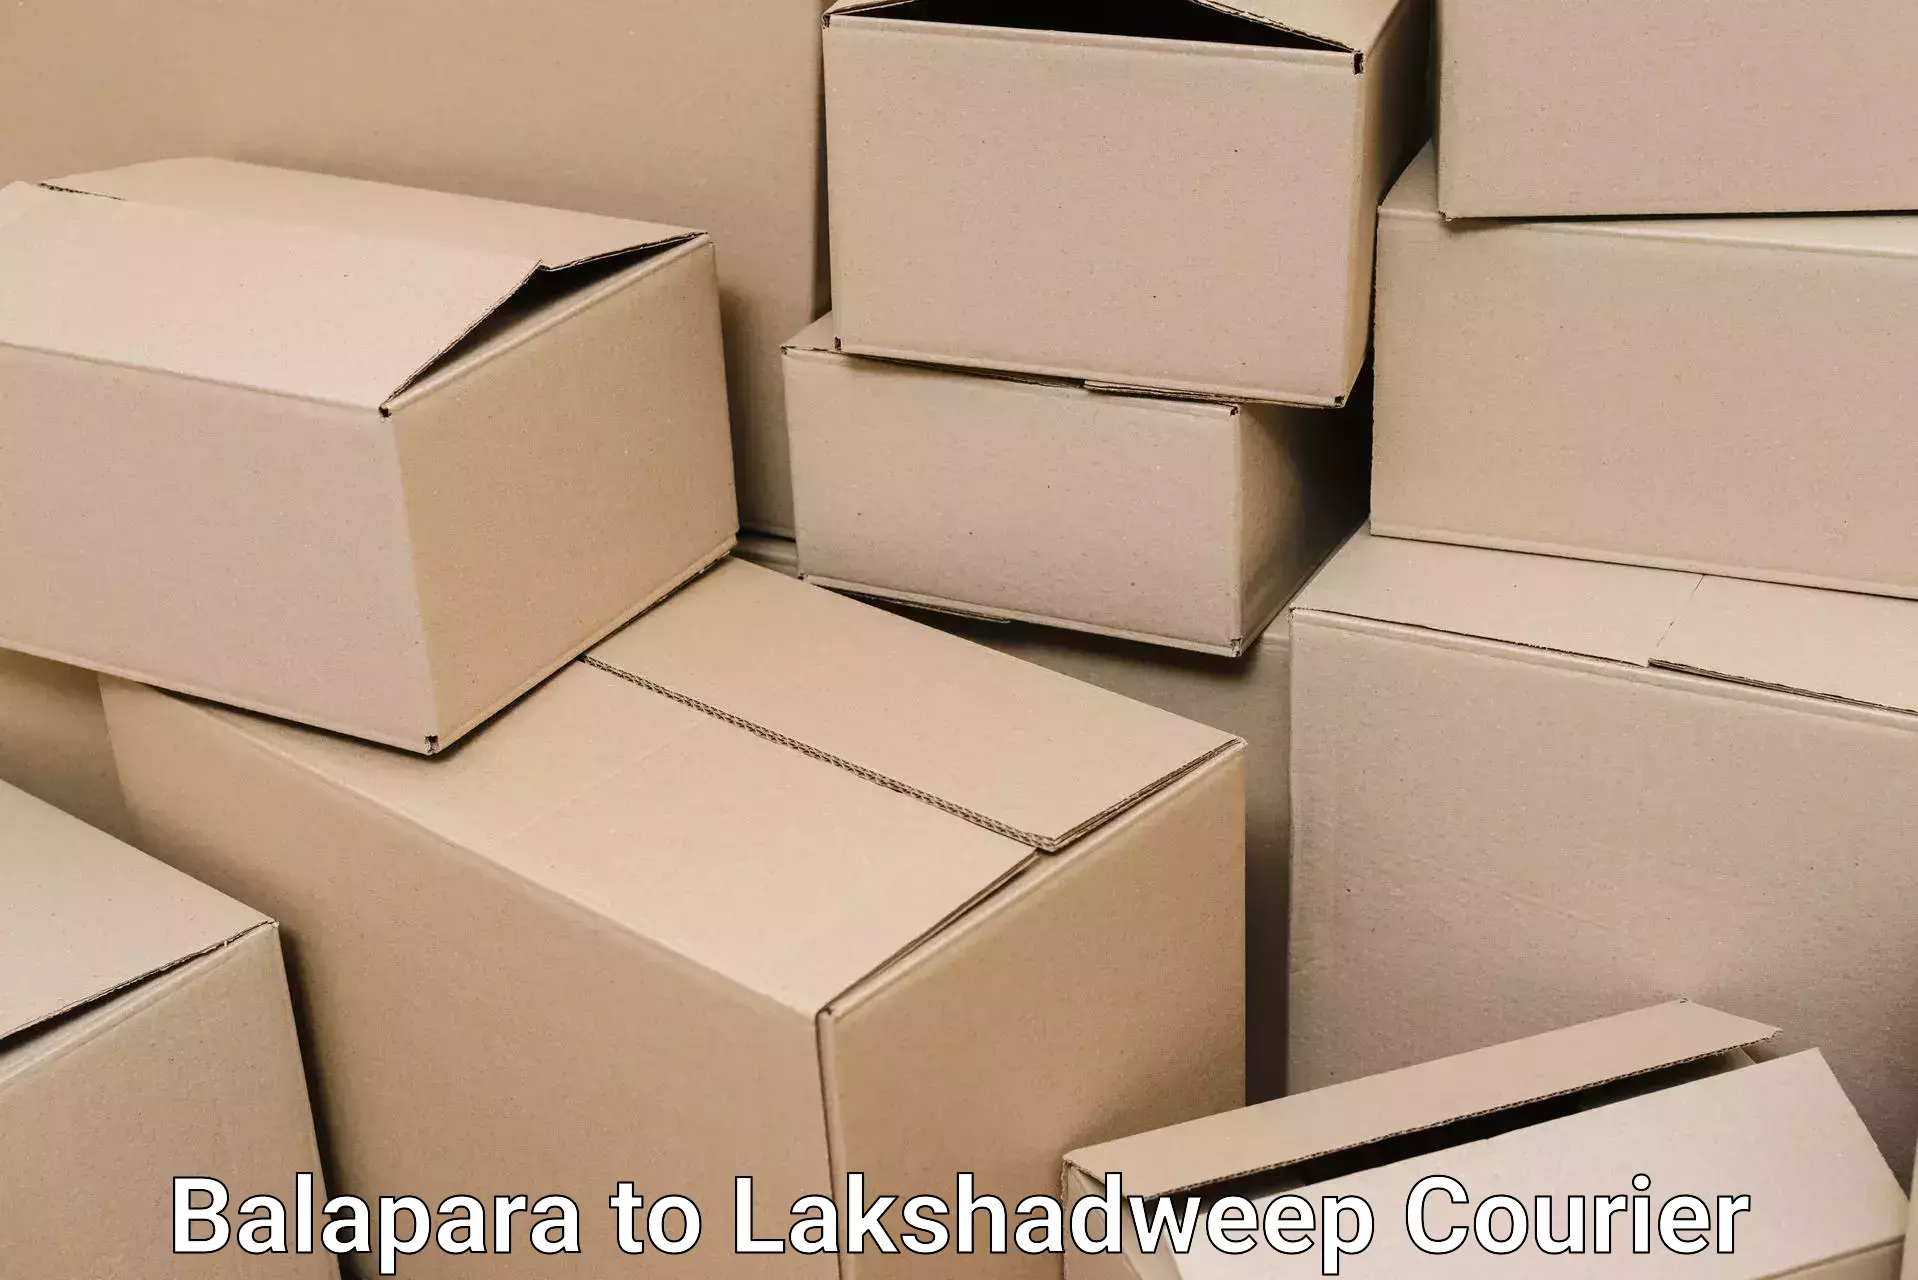 Professional moving company Balapara to Lakshadweep